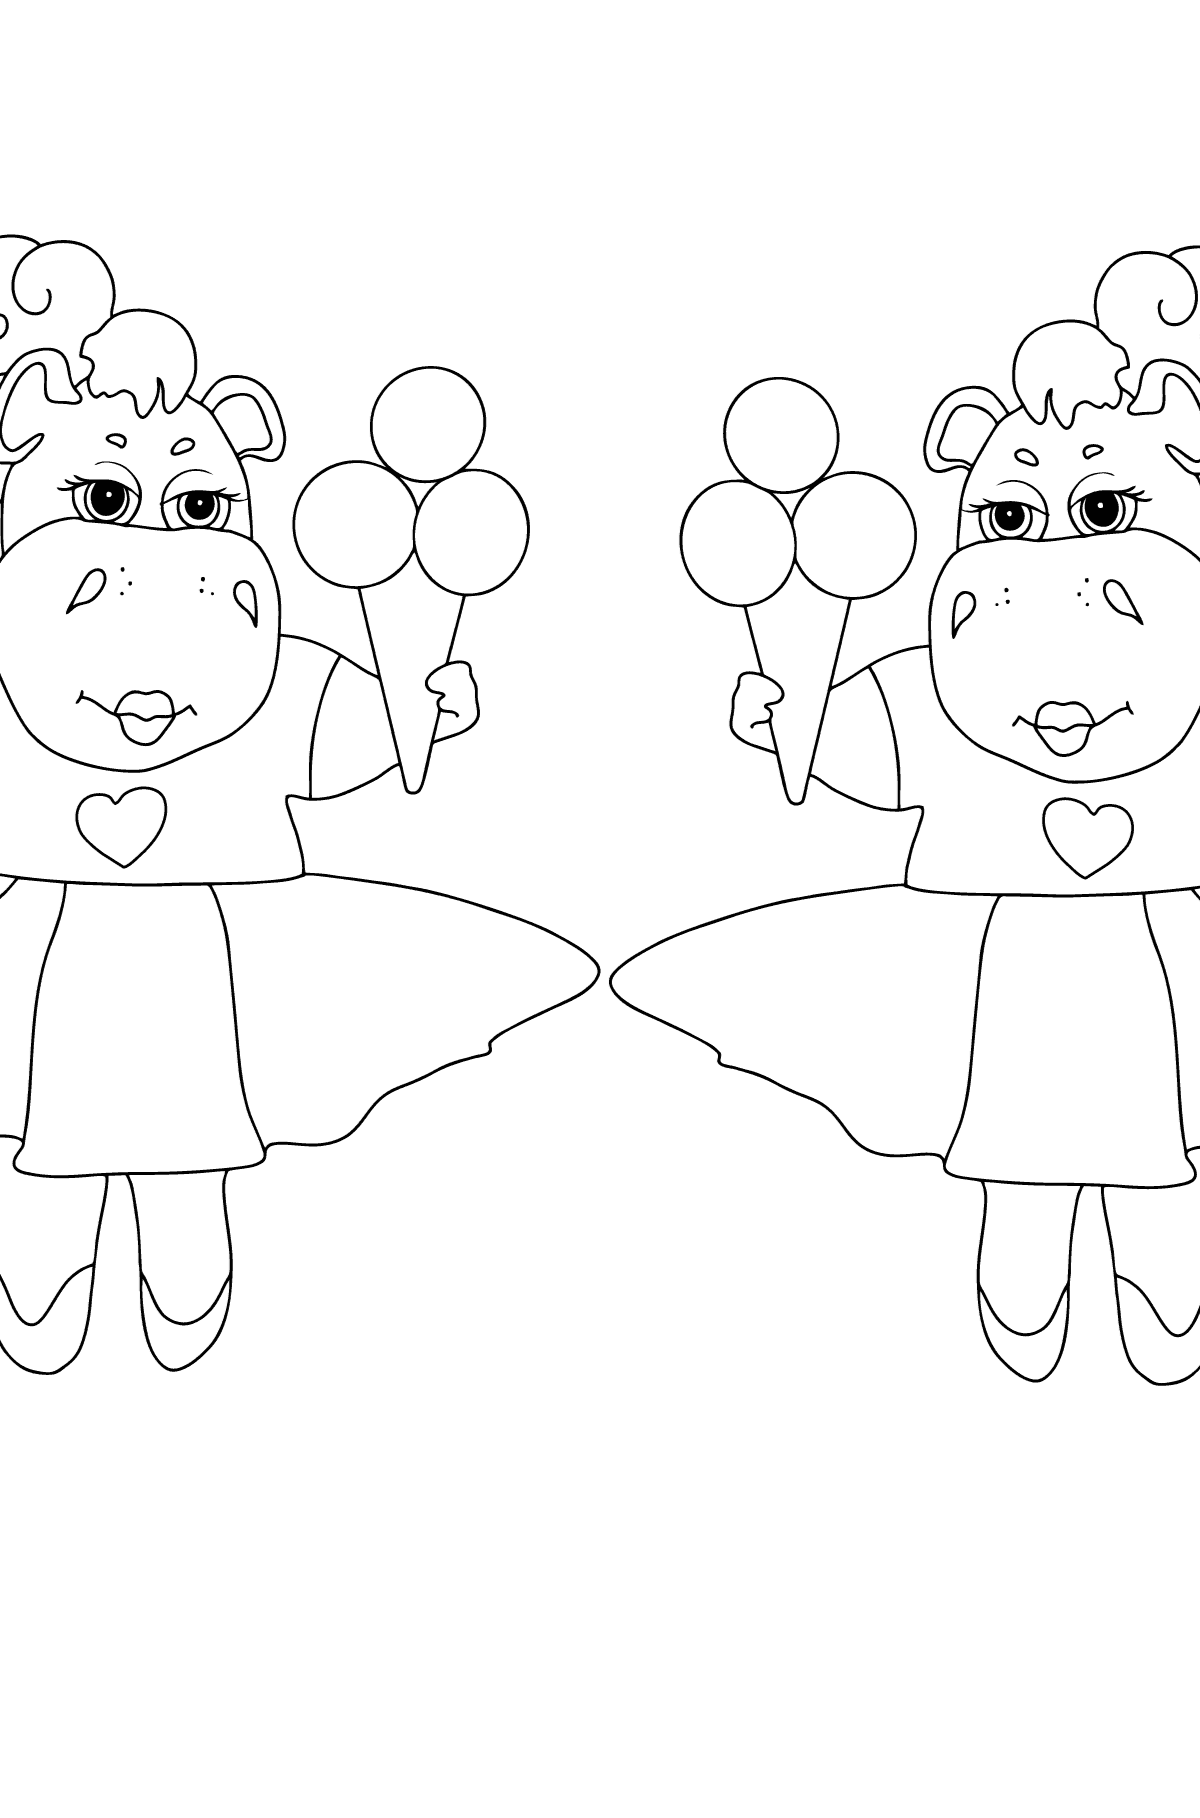 Раскраска Очаровательные Бегемоты (сложно) - Картинки для Детей